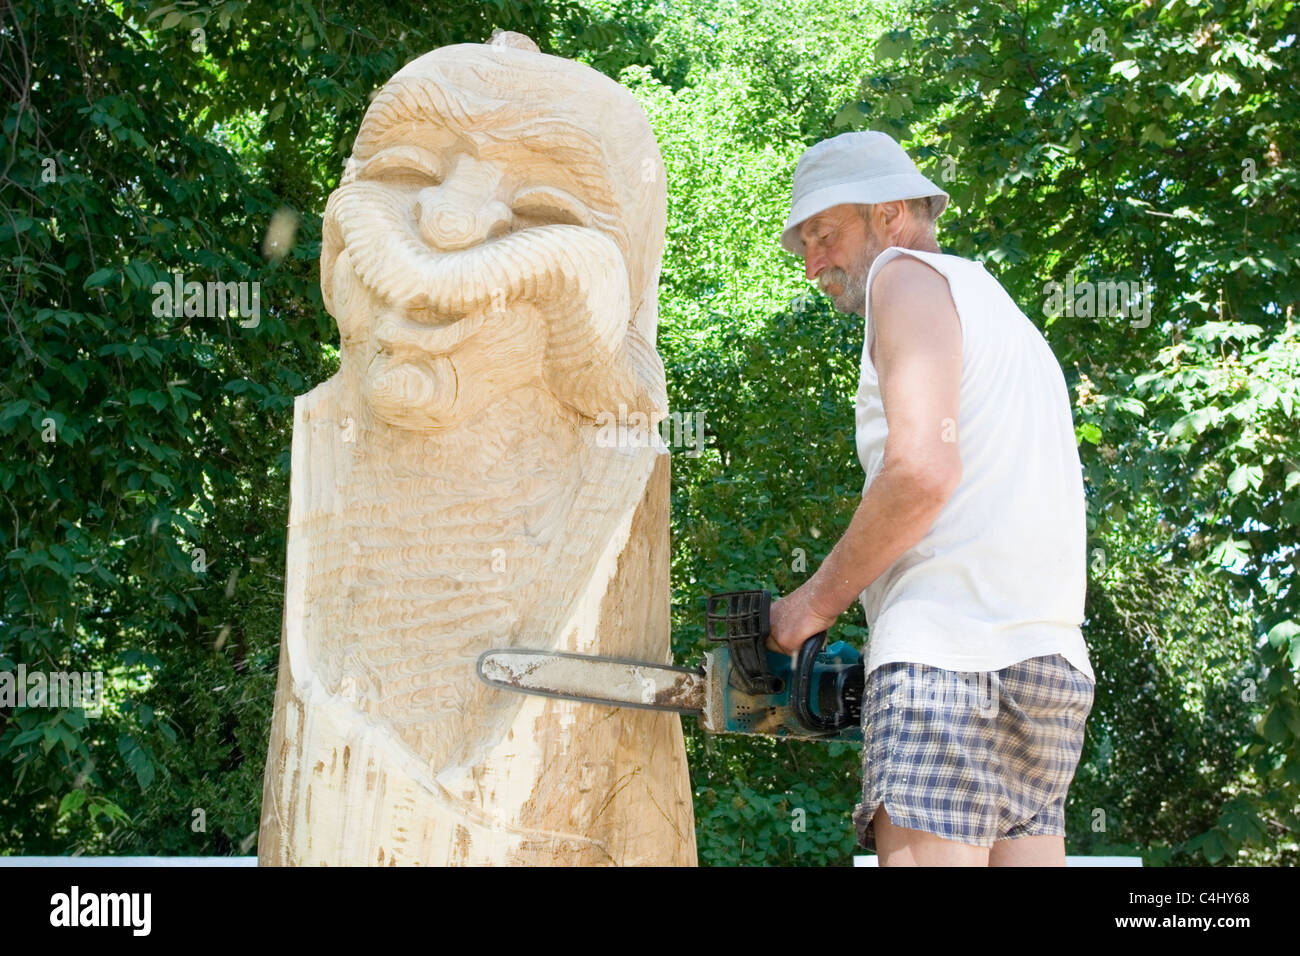 Un sculpteur crée une sculpture en bois Banque D'Images